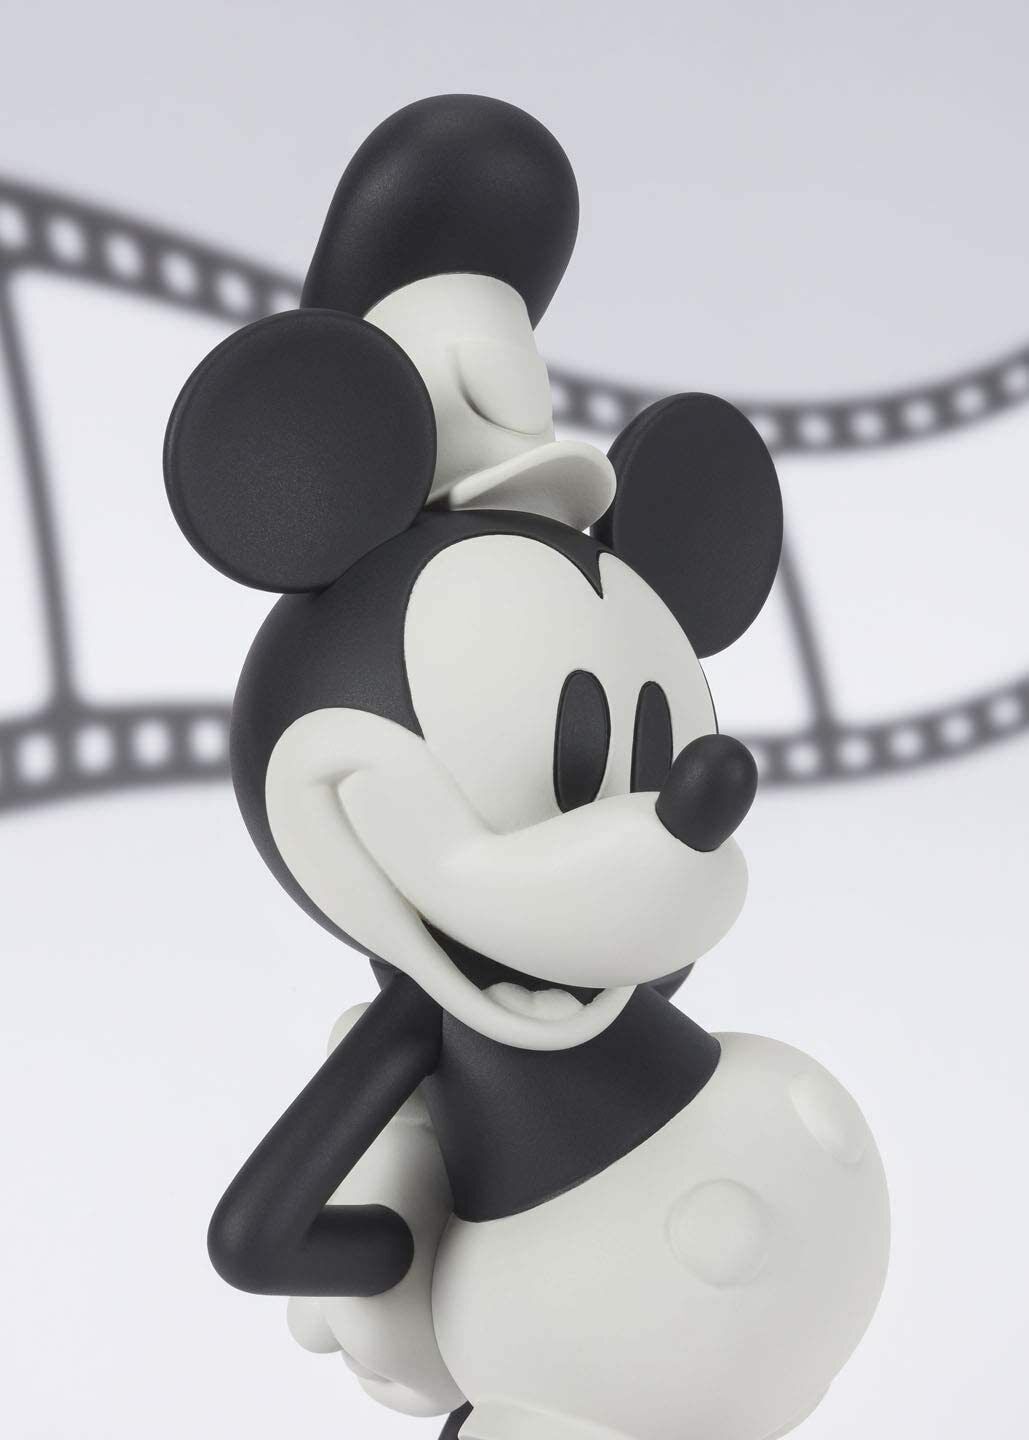 Figuarts Zero Mickey Mouse Steamboat Willie 90 Aniversario Edición Limitada Disney